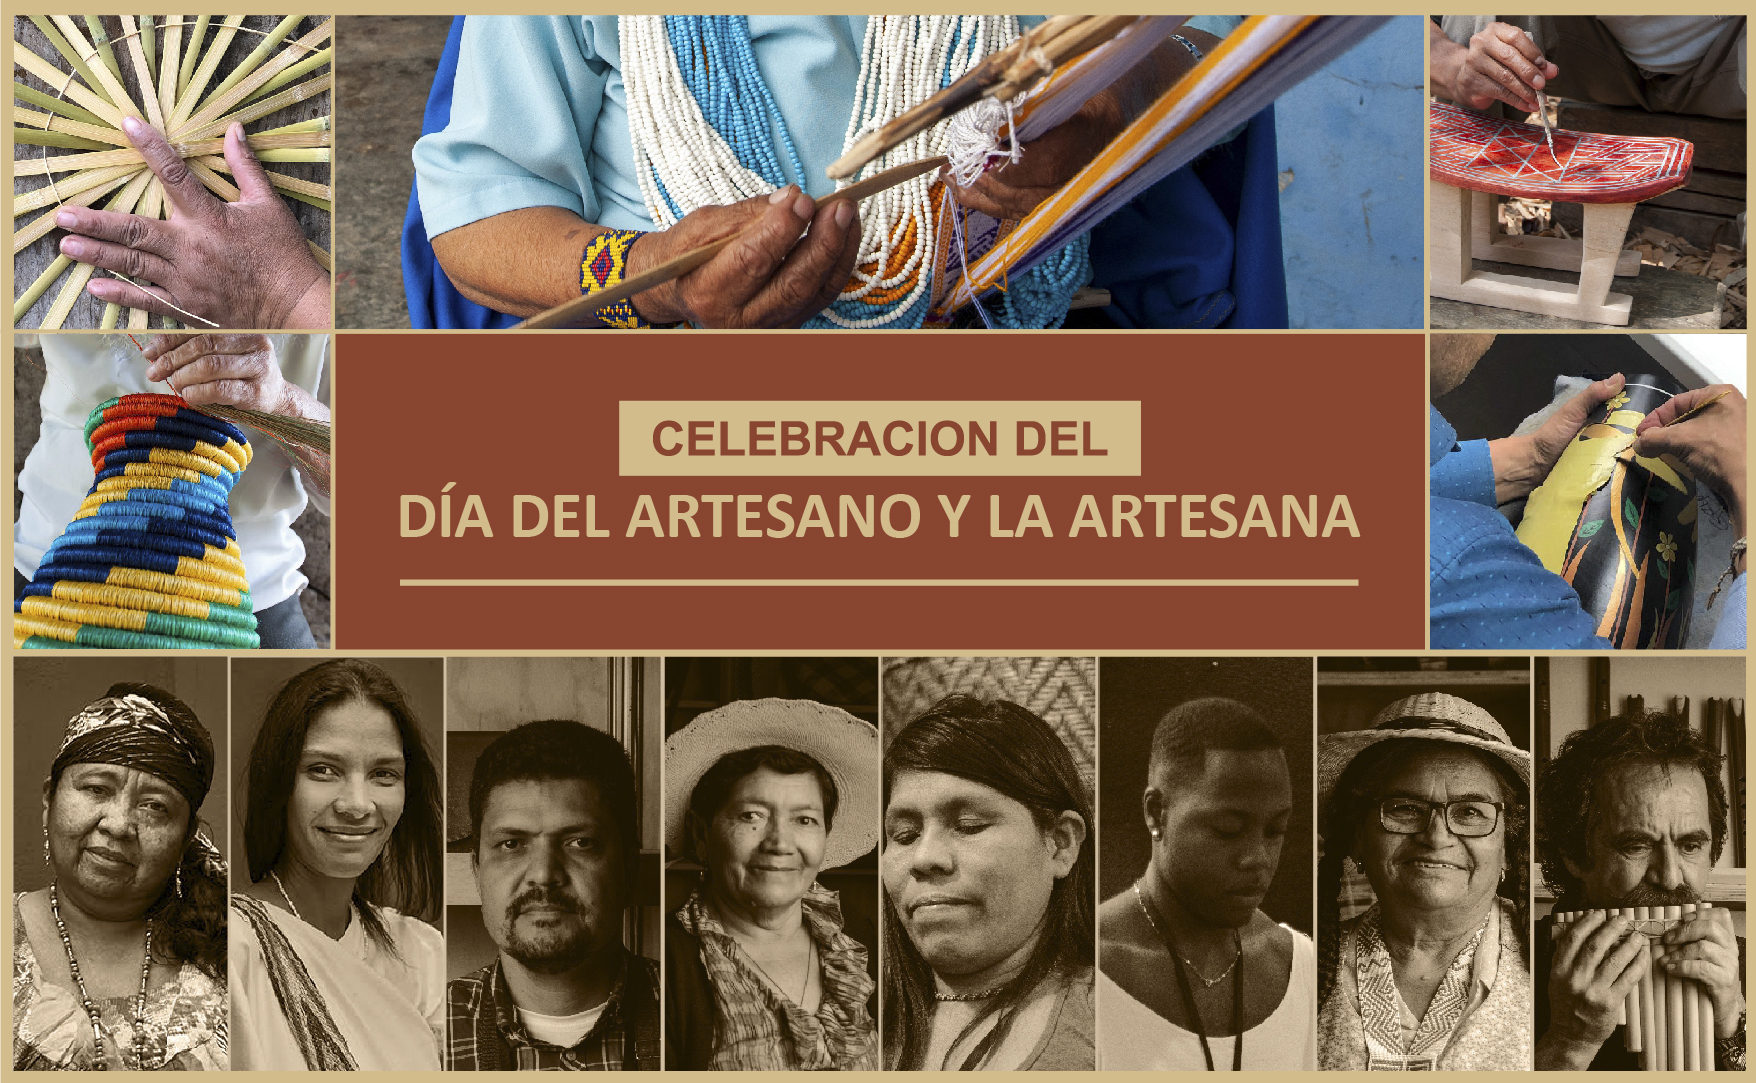 Artesanos Colombianos, celebran el día del Artesano y la Artesana